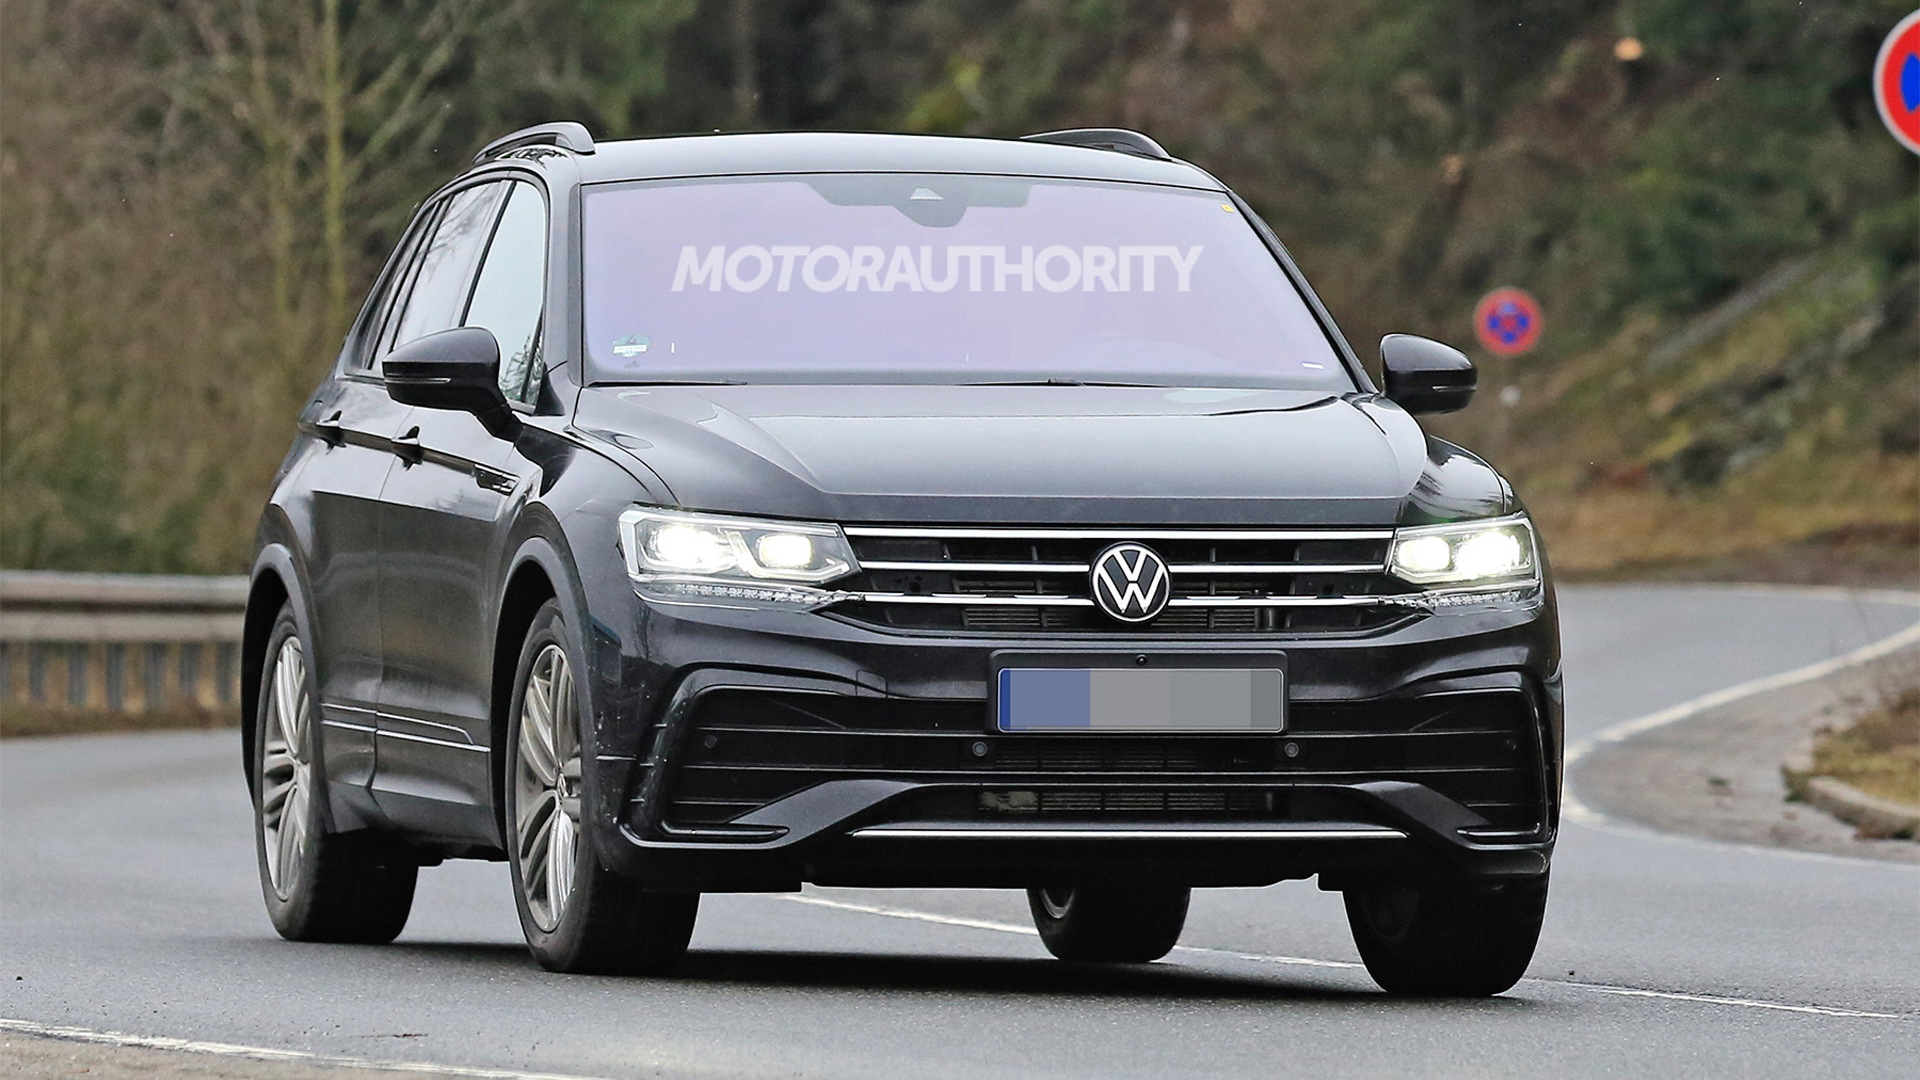 2021 Volkswagen Tiguan facelift spy shots - Photo credit: S. Baldauf/SB-Medien